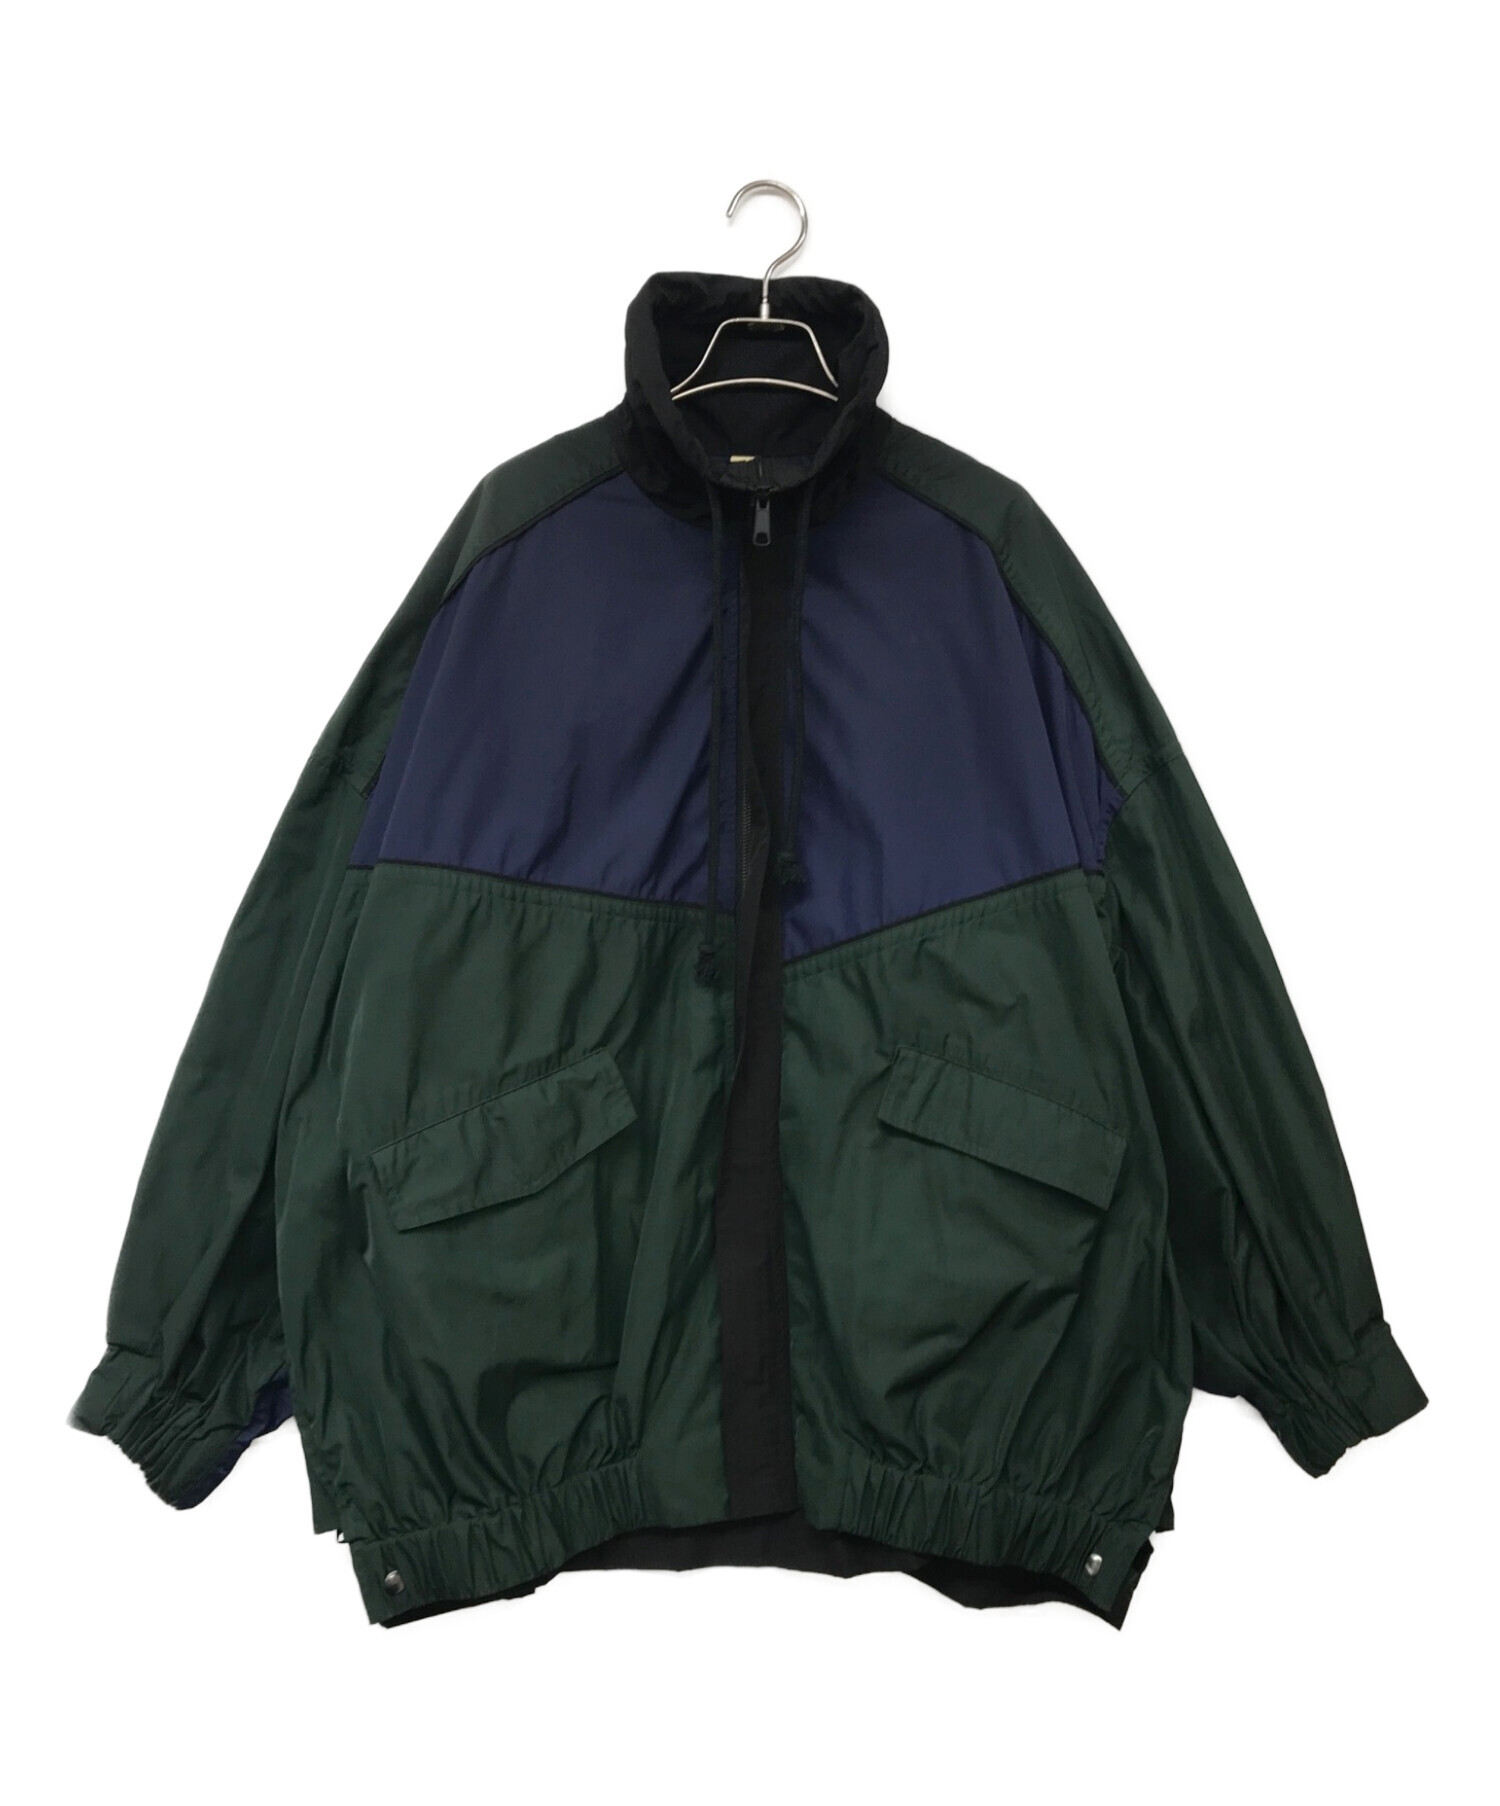 nagonstans (ナゴンスタンス) メモリーツイル ボンバージャケット ネイビー×グリーン サイズ:38